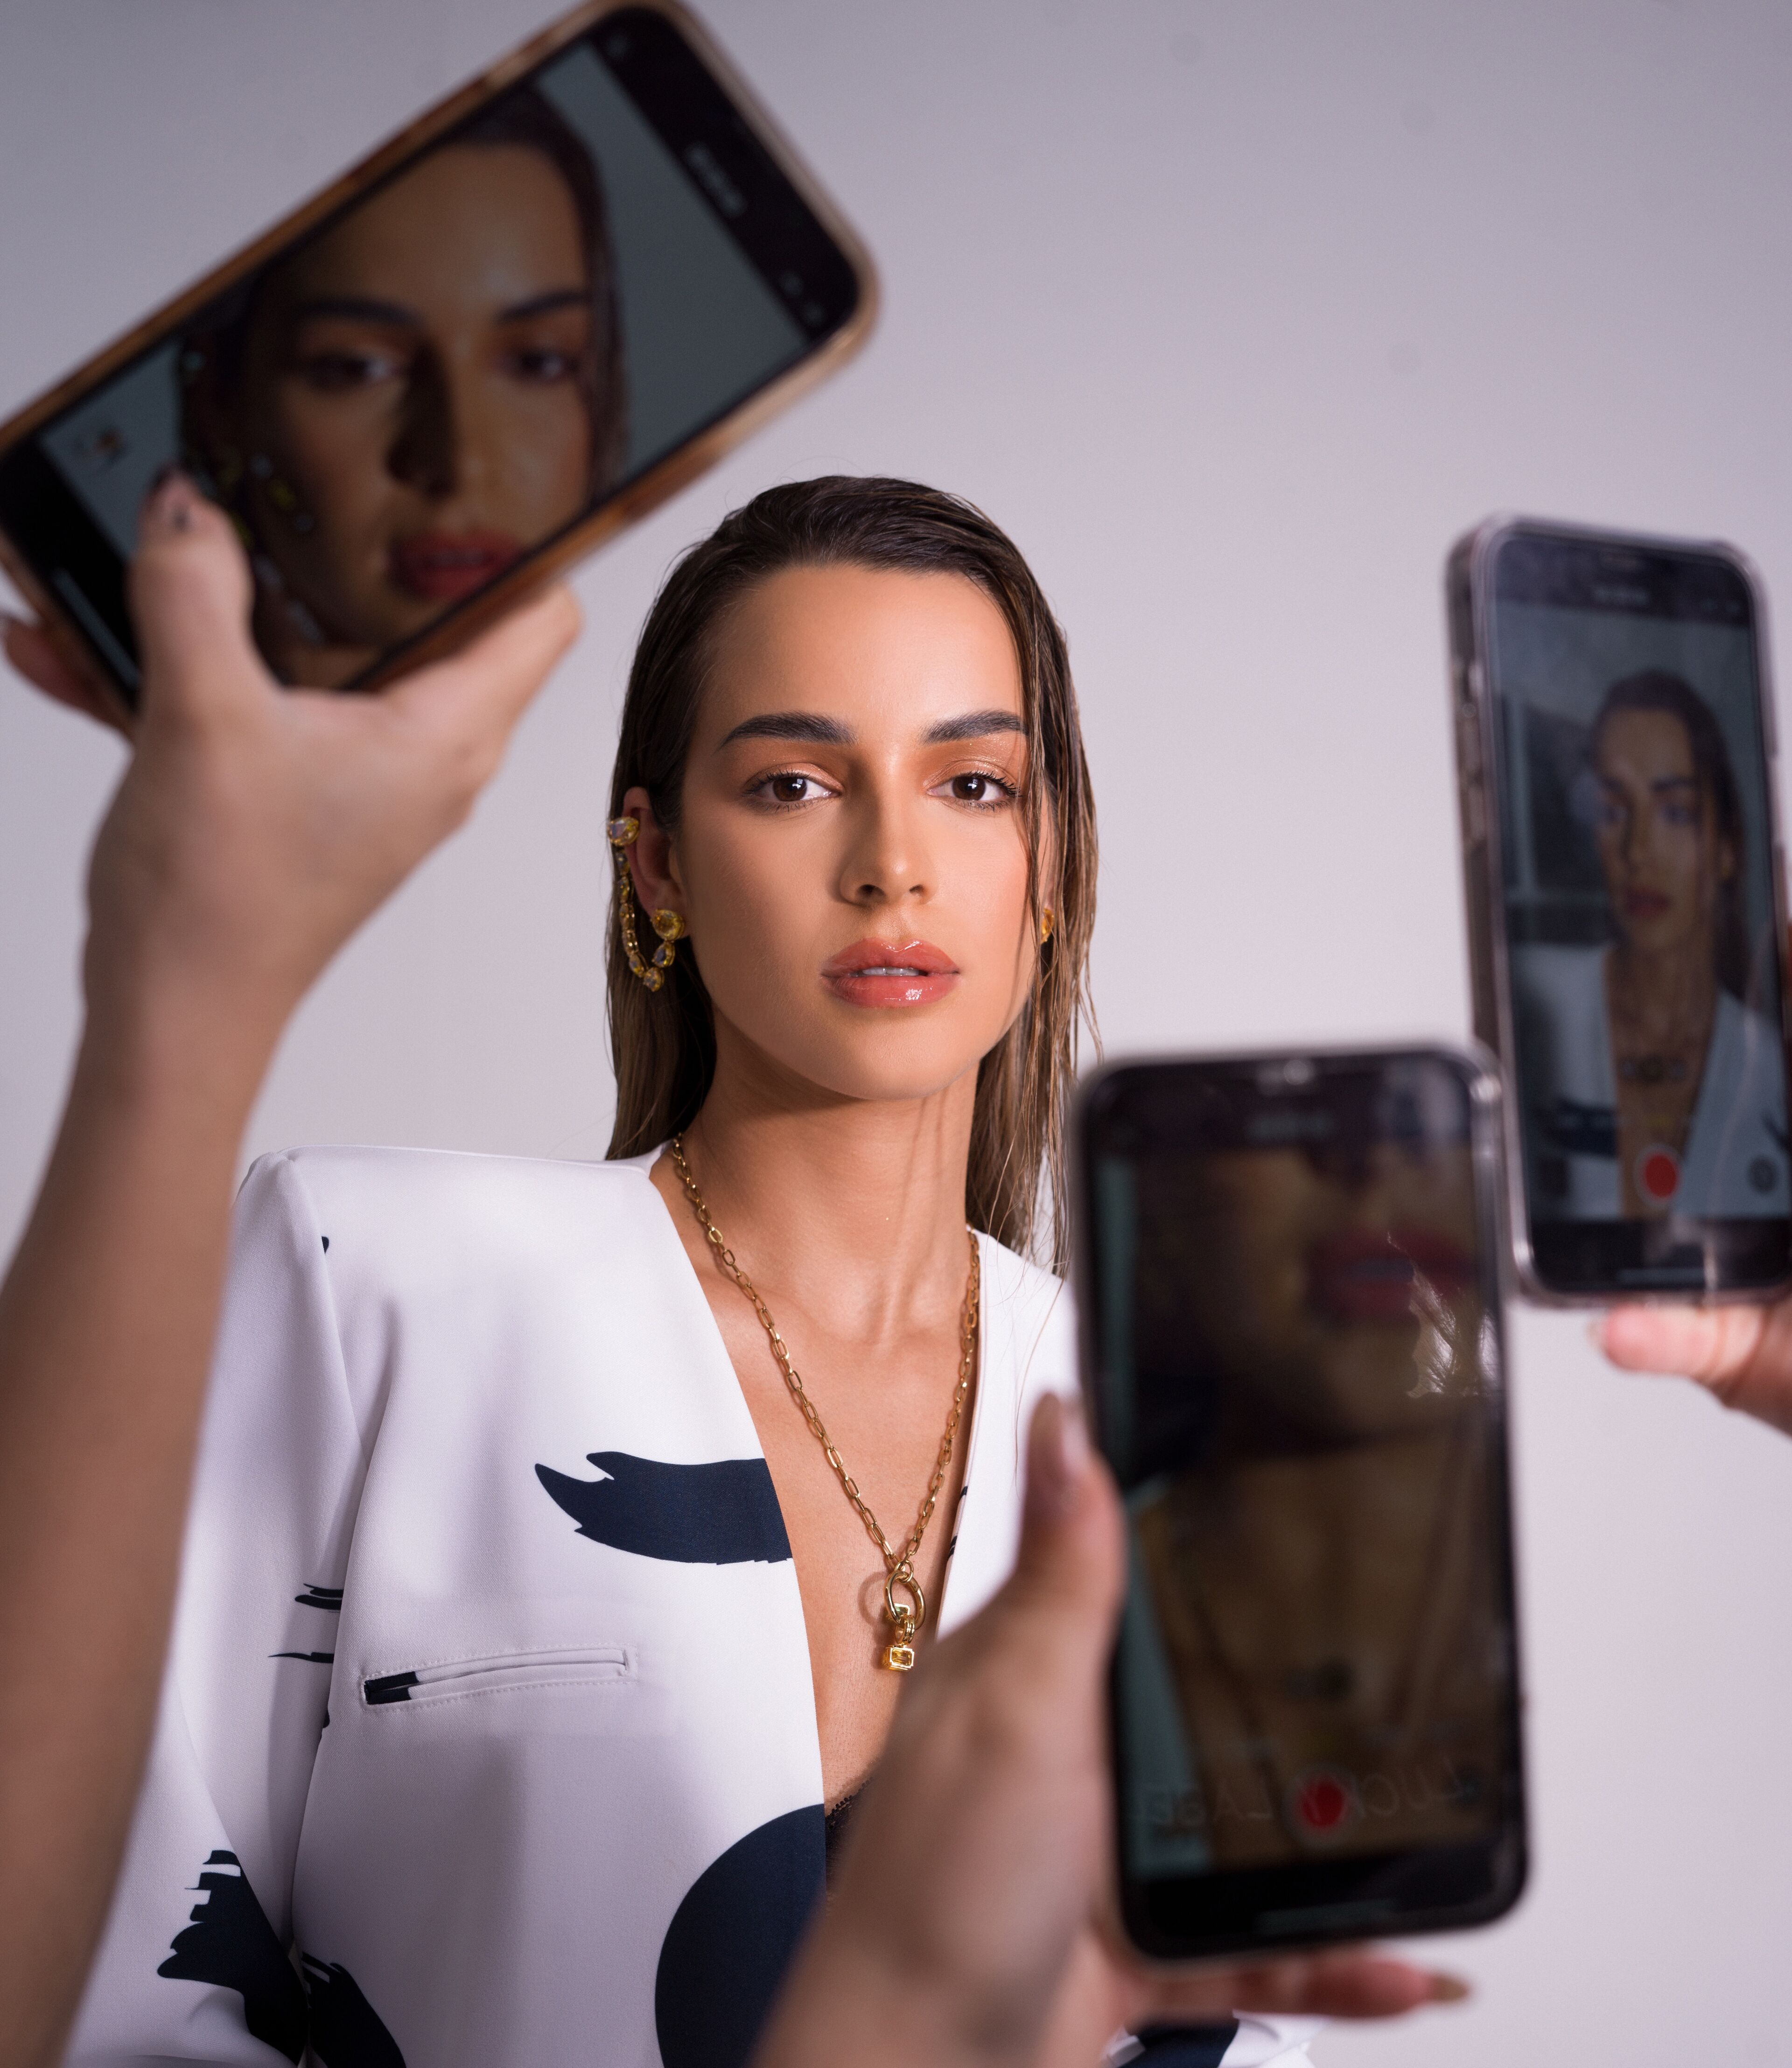 Una mujer posando para una sesión de fotos, vista a través de las cámaras de varios smartphones contra un fondo liso.